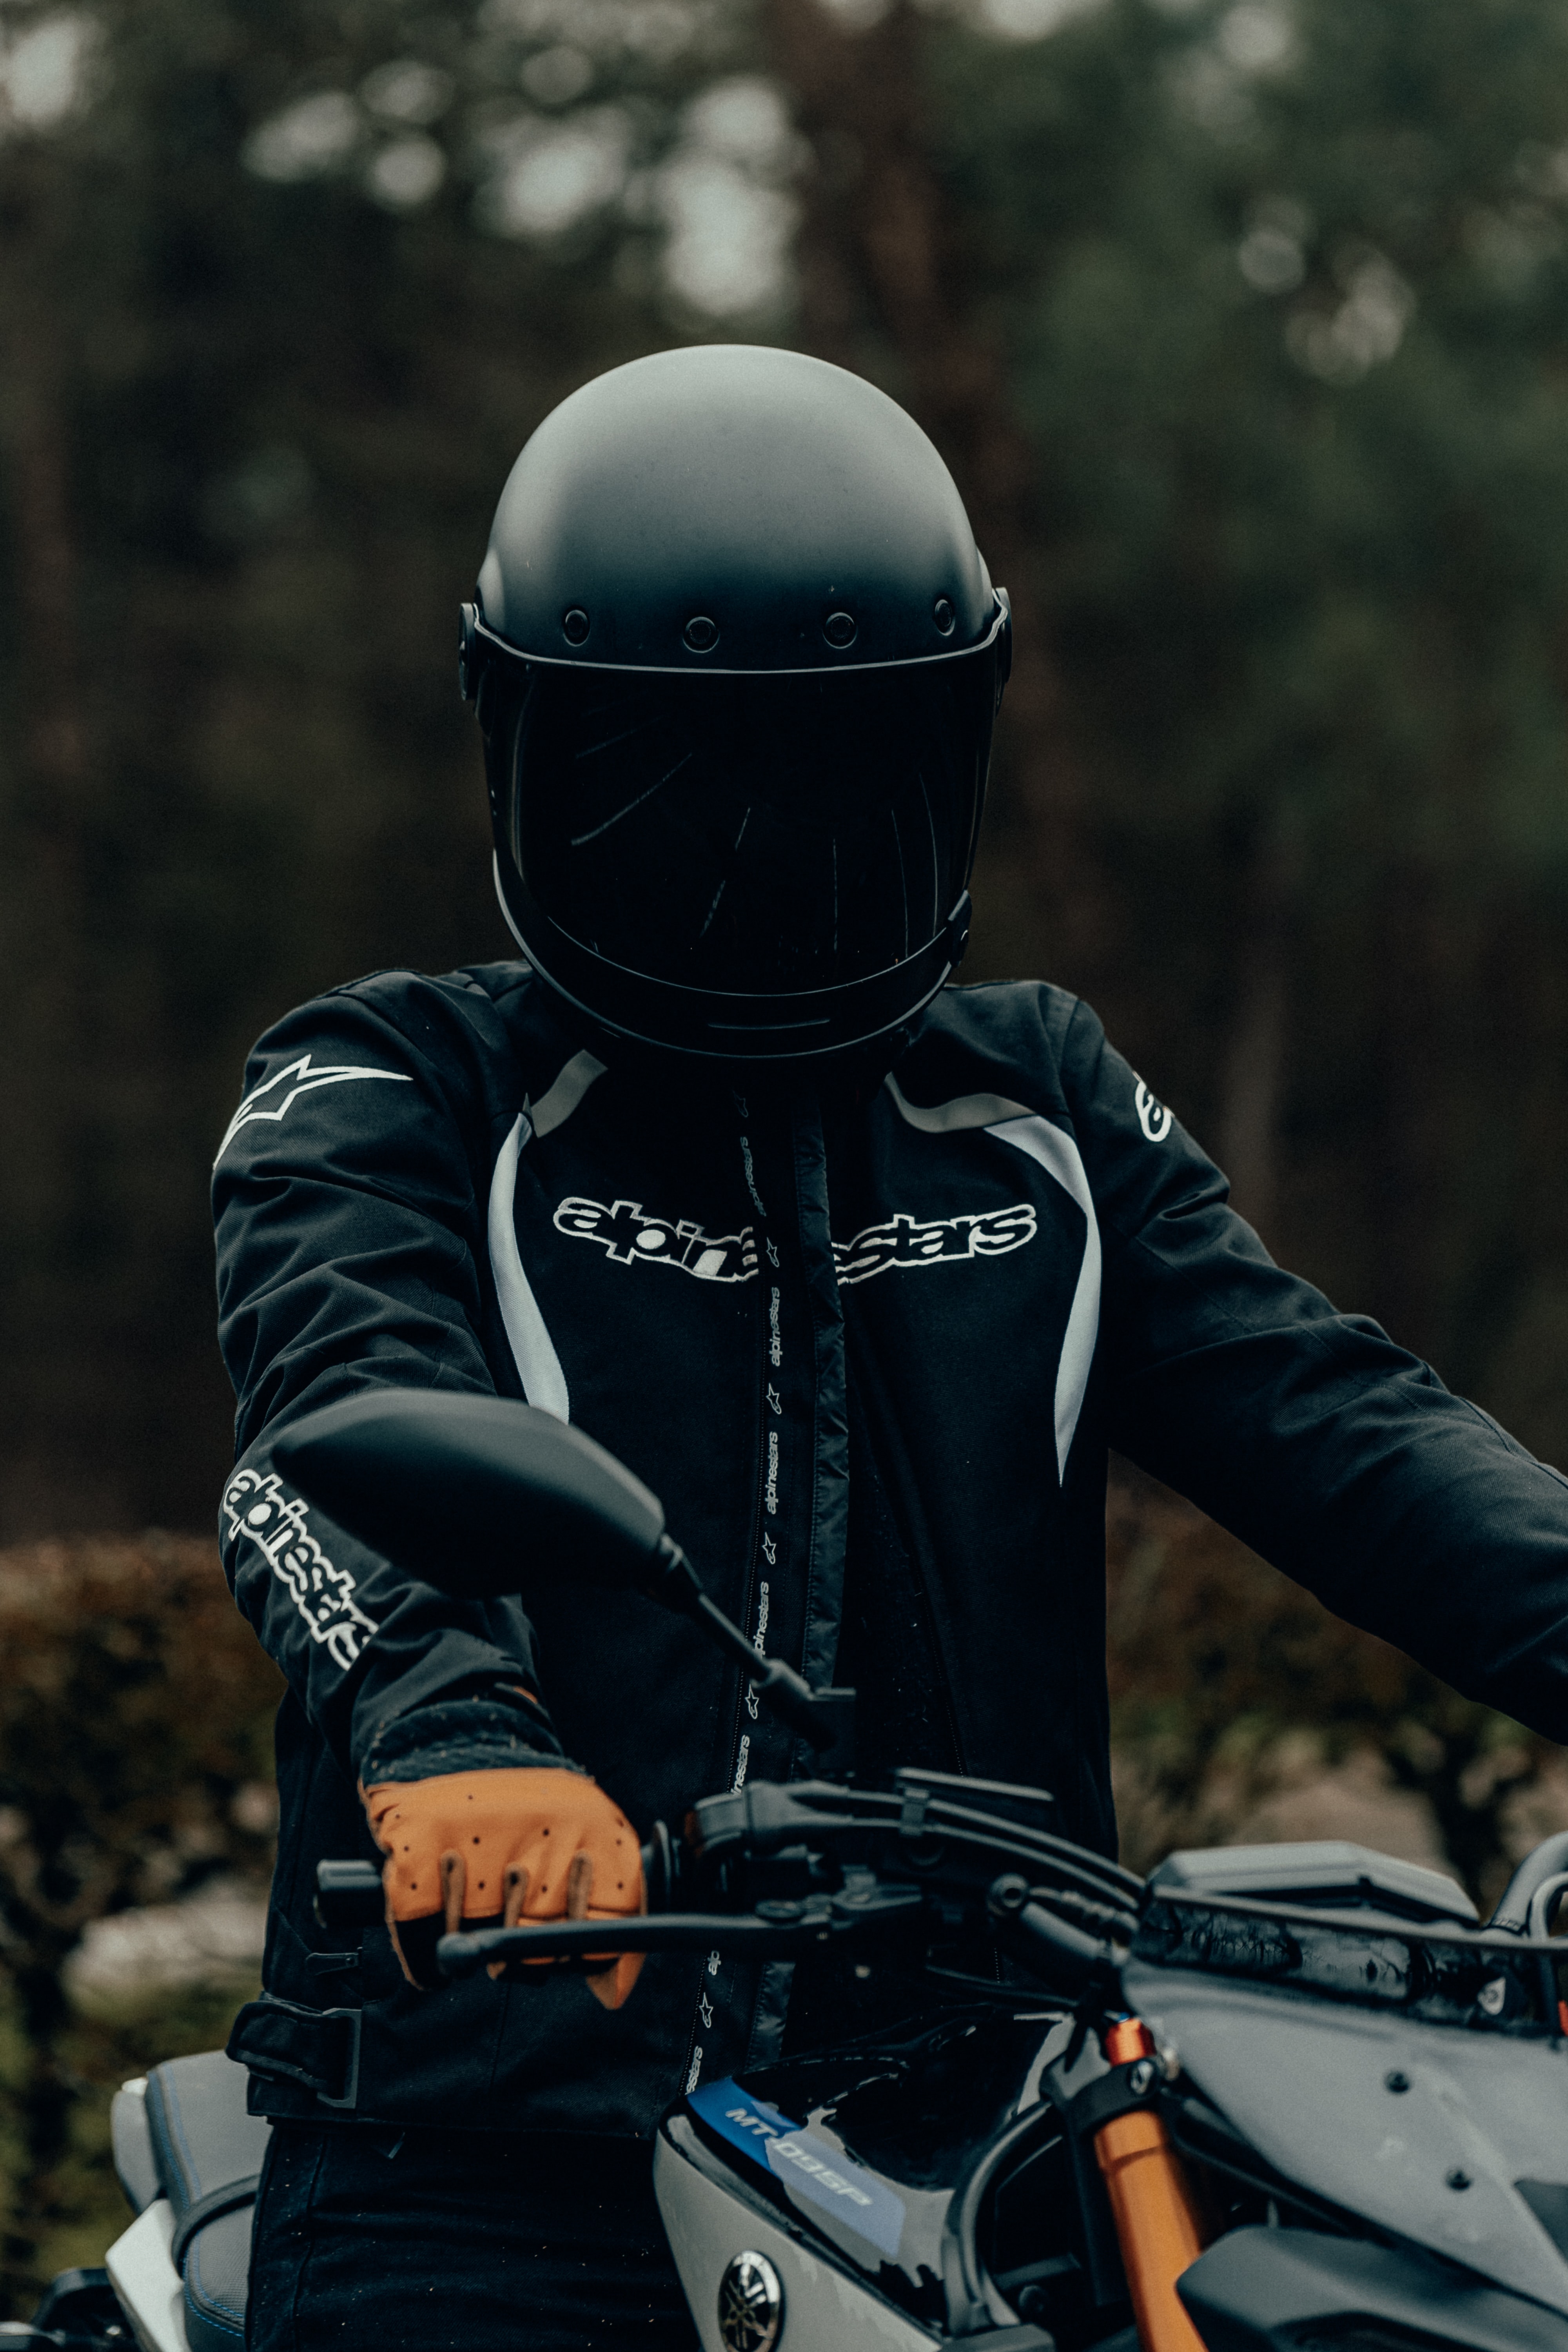 motorcycles, motorcyclist, helmet, motorcycle, steering wheel, rudder Desktop Wallpaper